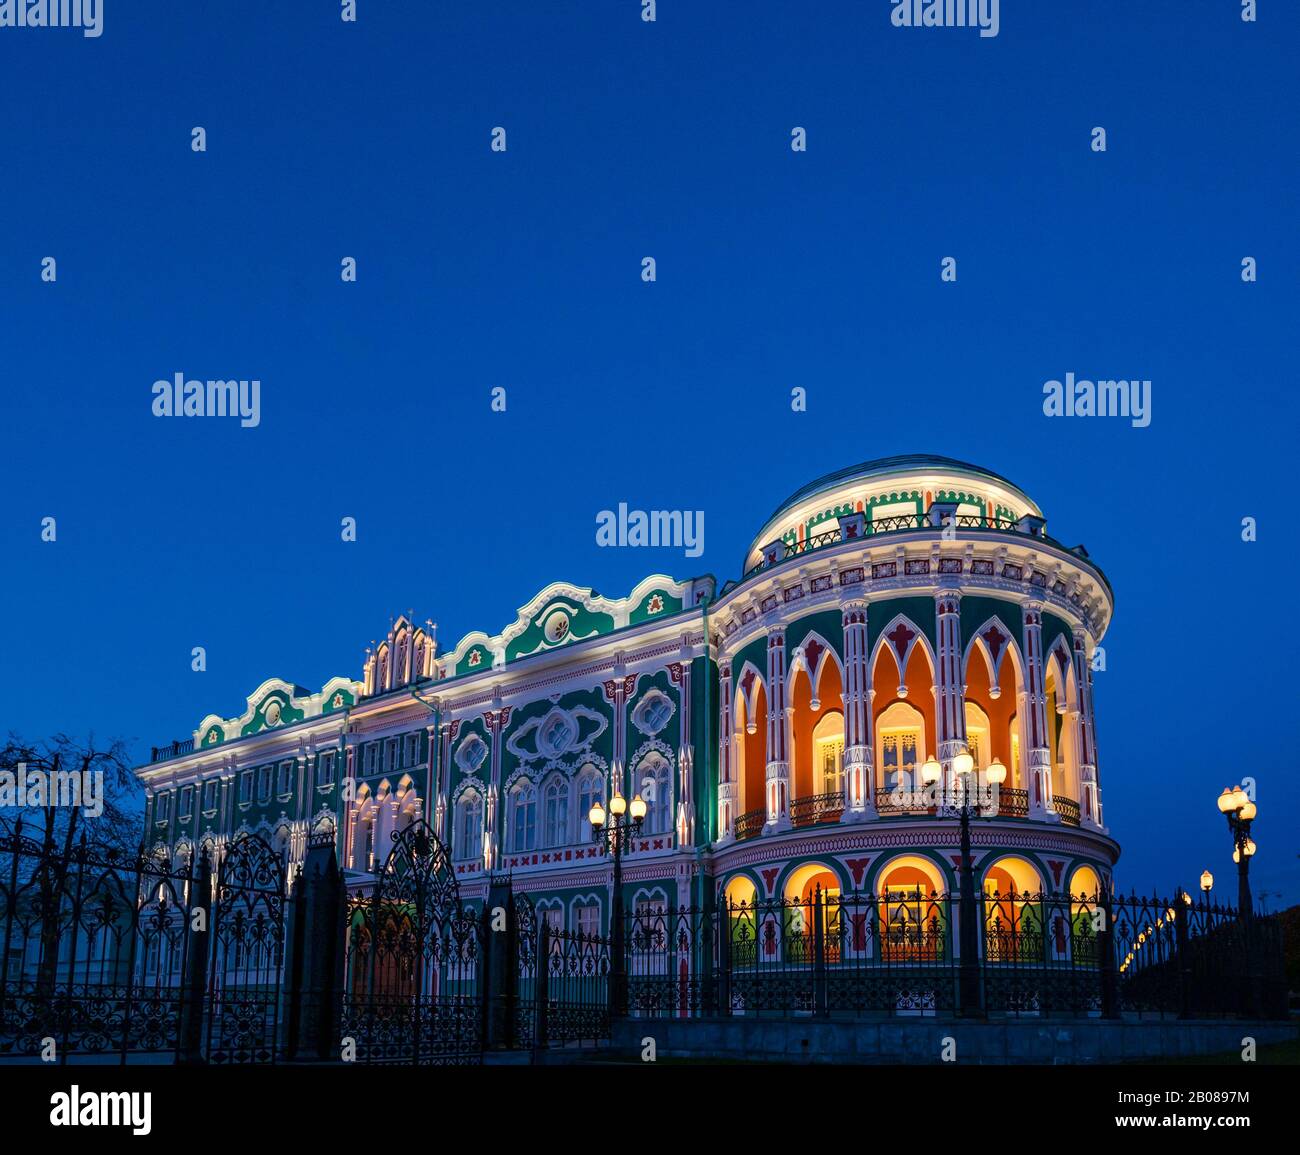 Maison historique colorée de Sevastyanova éclairée la nuit, avenue Lenin, Yekaterinburg, Sibérie, fédération de Russie Banque D'Images